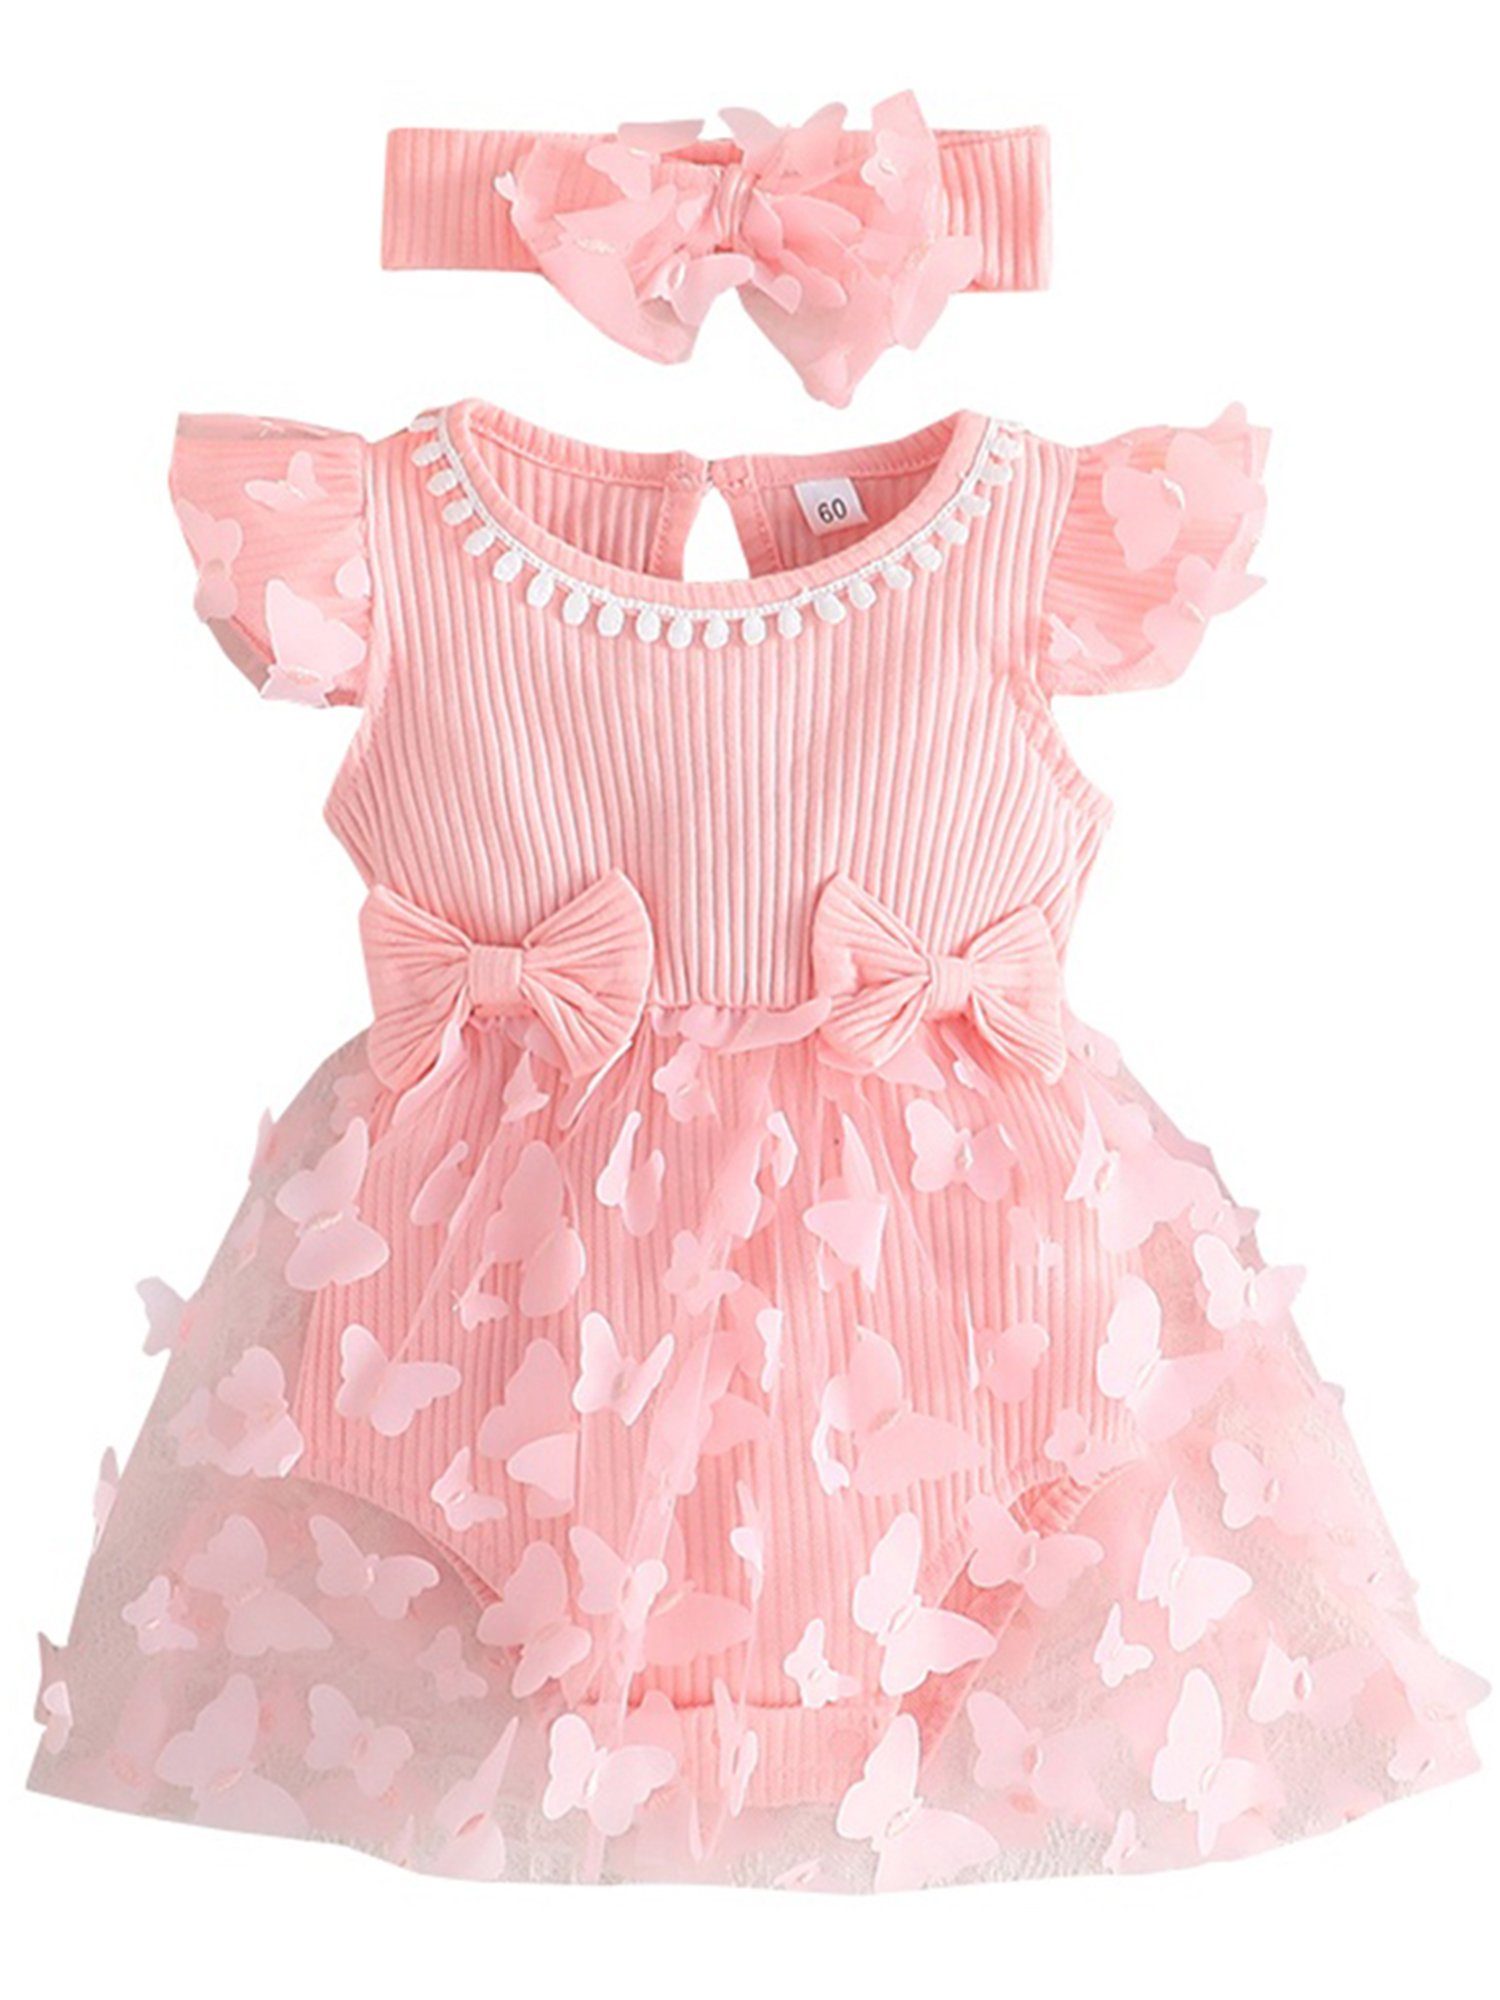 LAPA Partykleid Baby Mädchen Tüll Sommerkleid mit Schmetterling Patch  Rüschen Ärmel